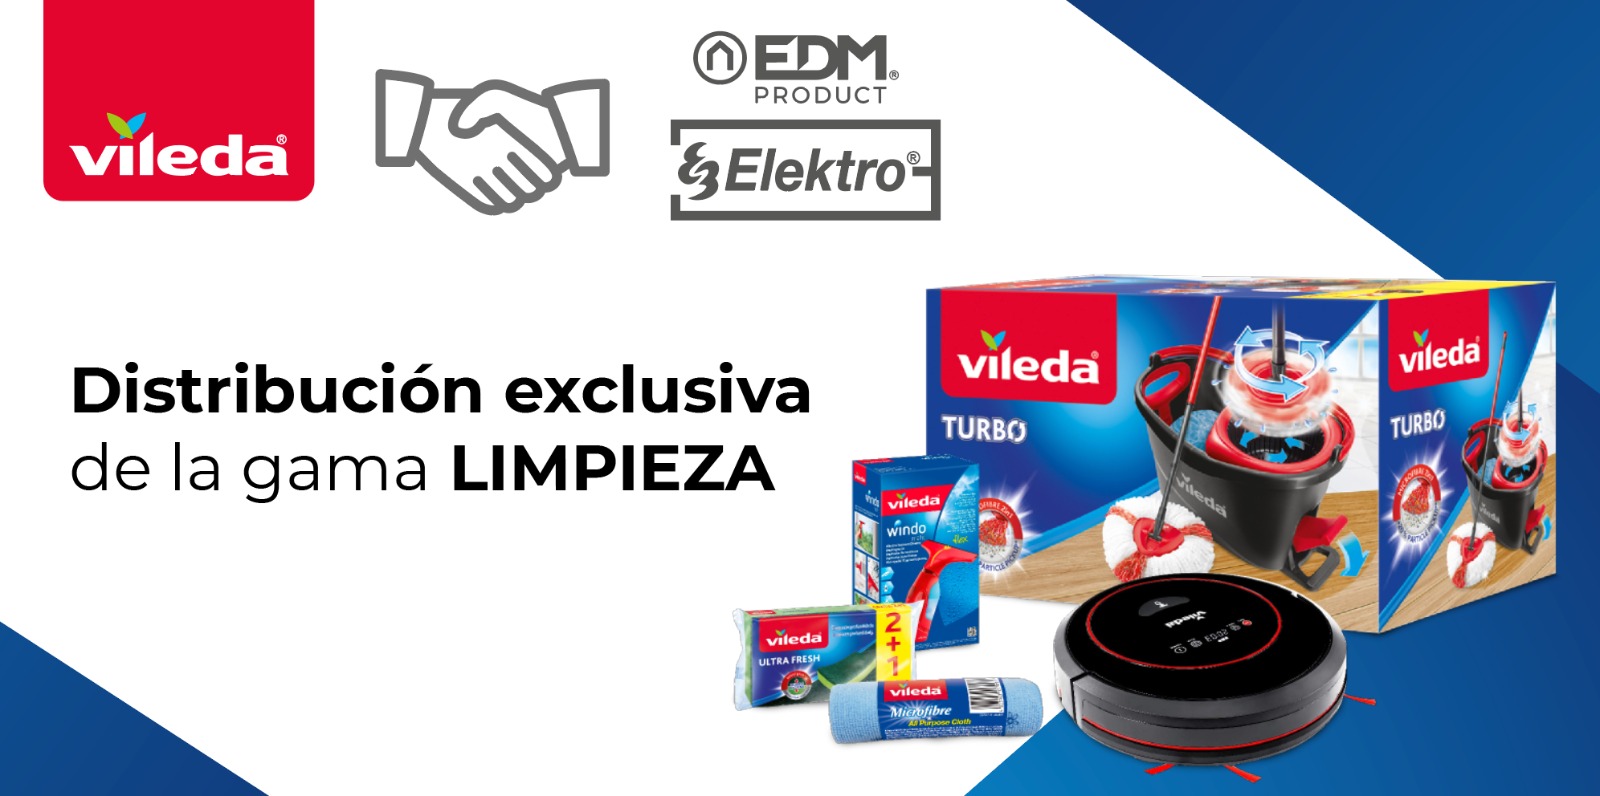 Elektro3-EDM único distribuidor Vileda, para o canal lojas de ferragens e bricolagem